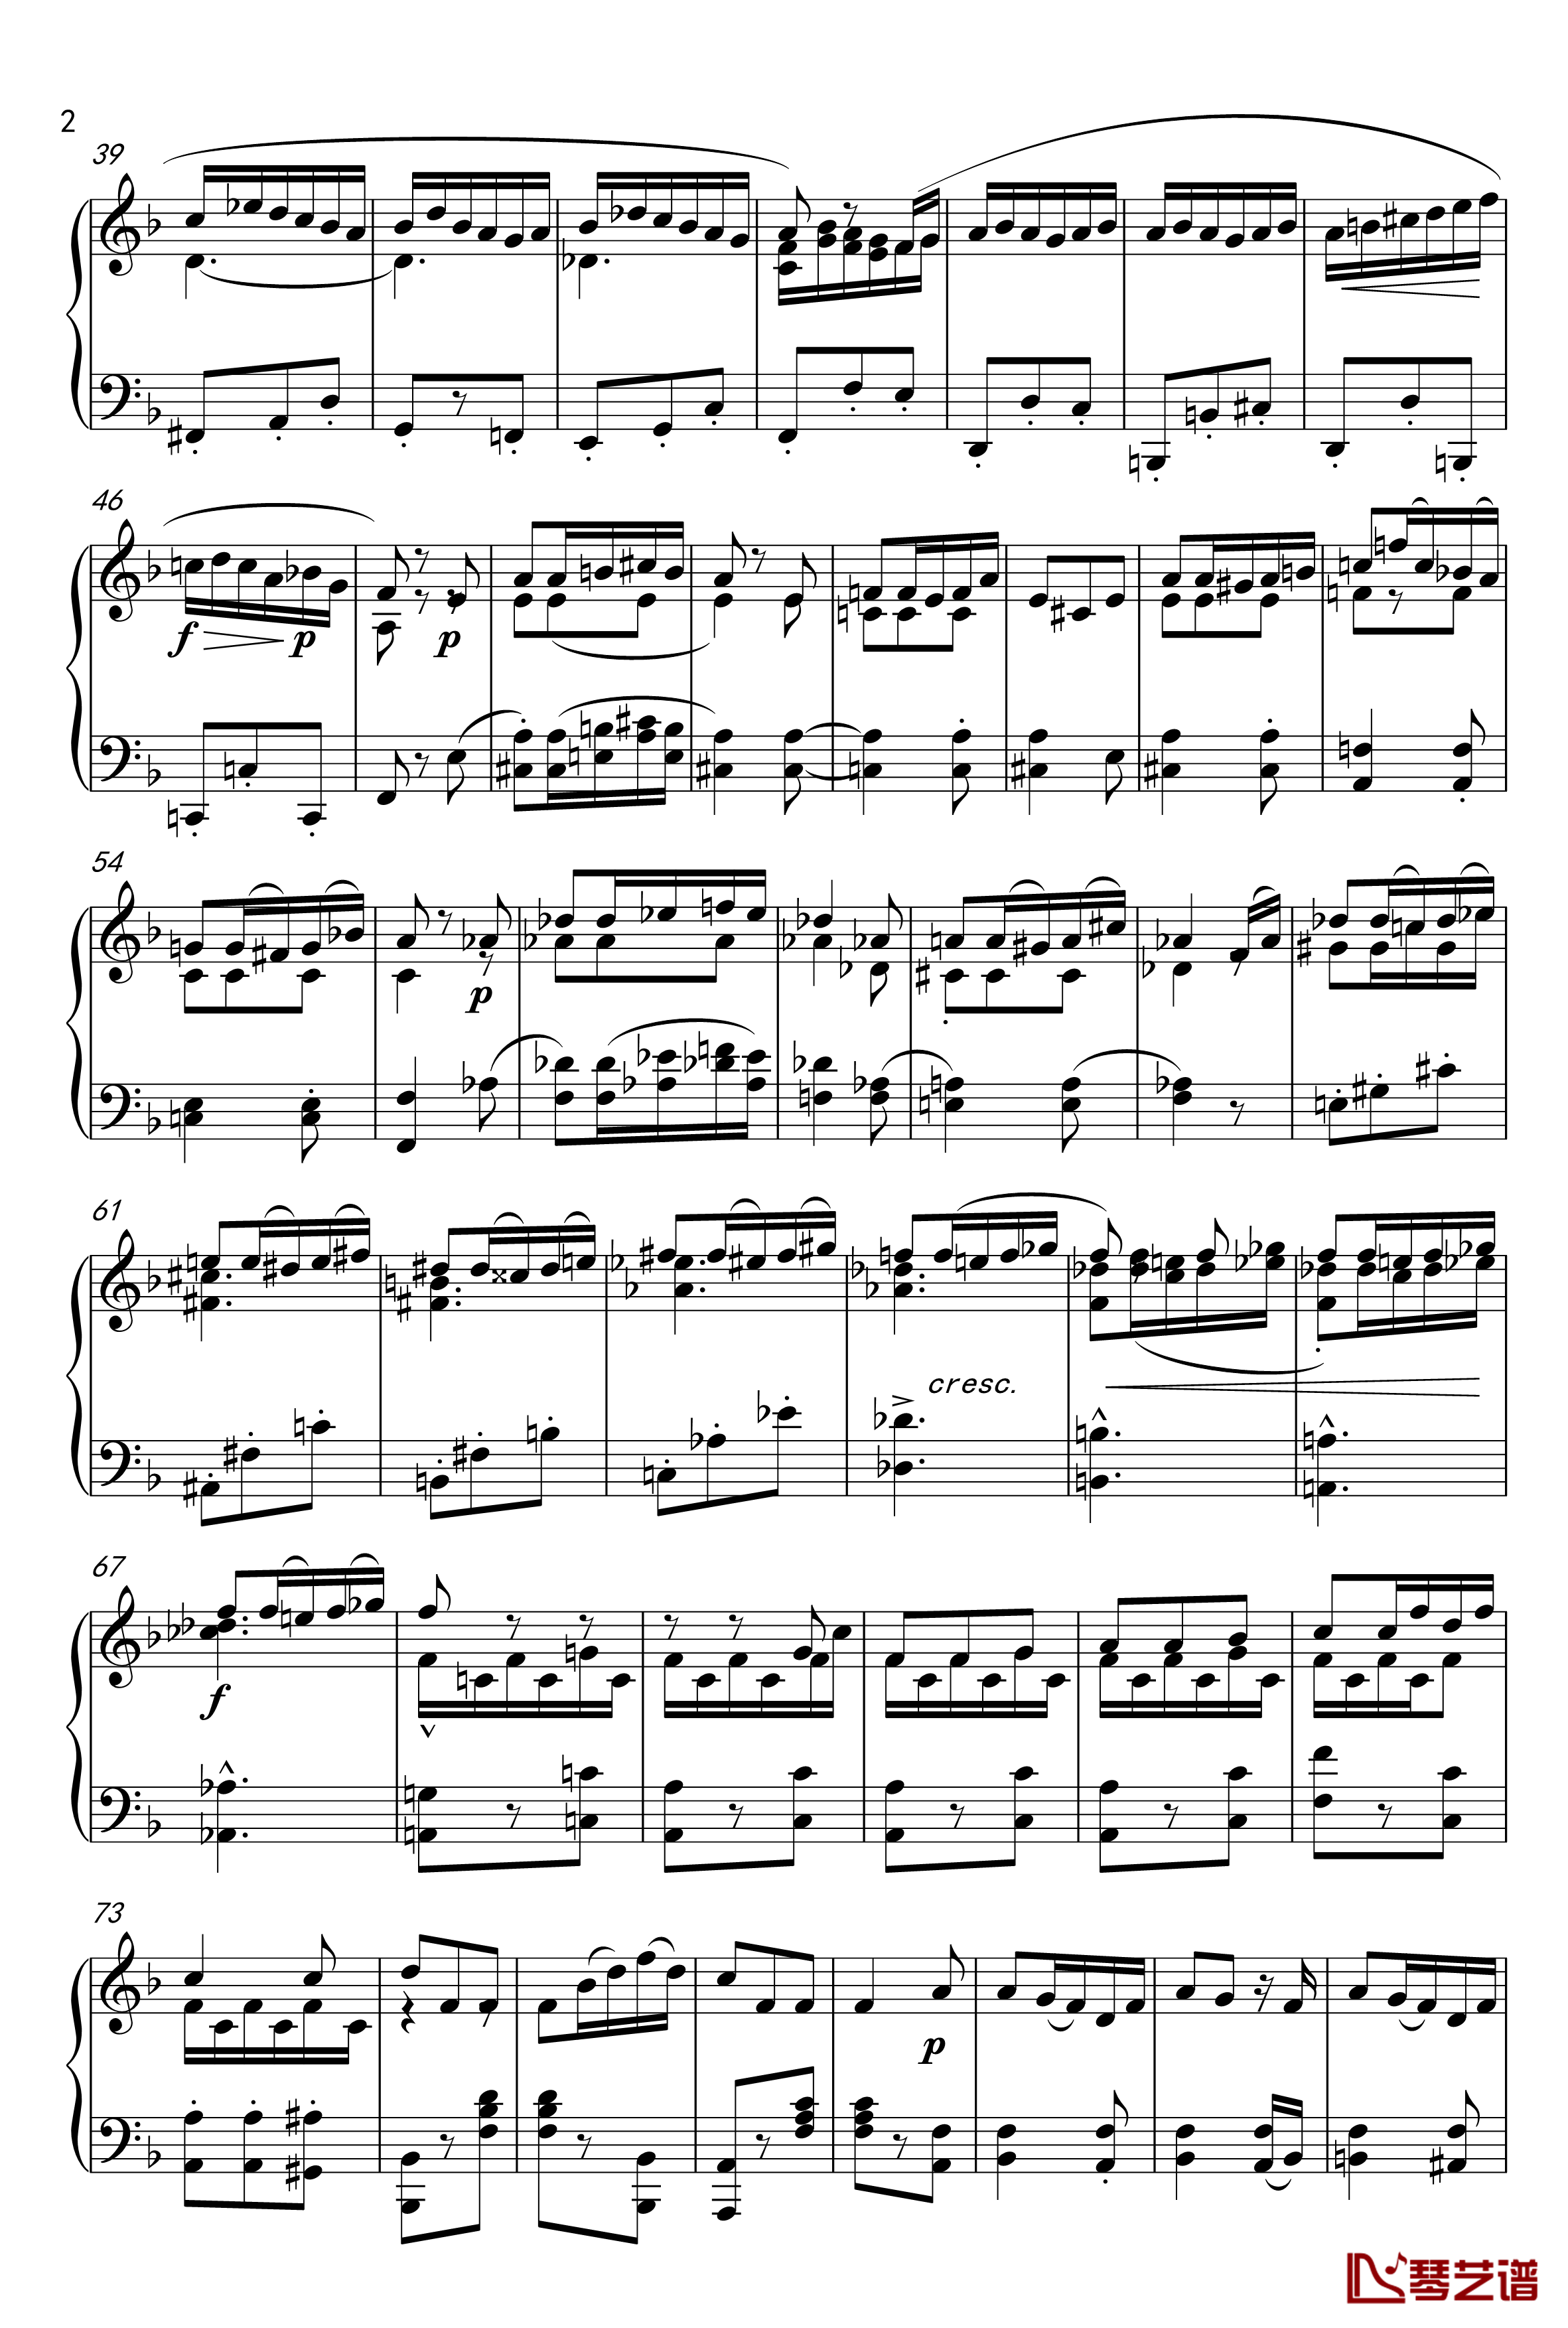 谁作出这首甜蜜的小曲钢琴谱-马勒-Z.D.Lin